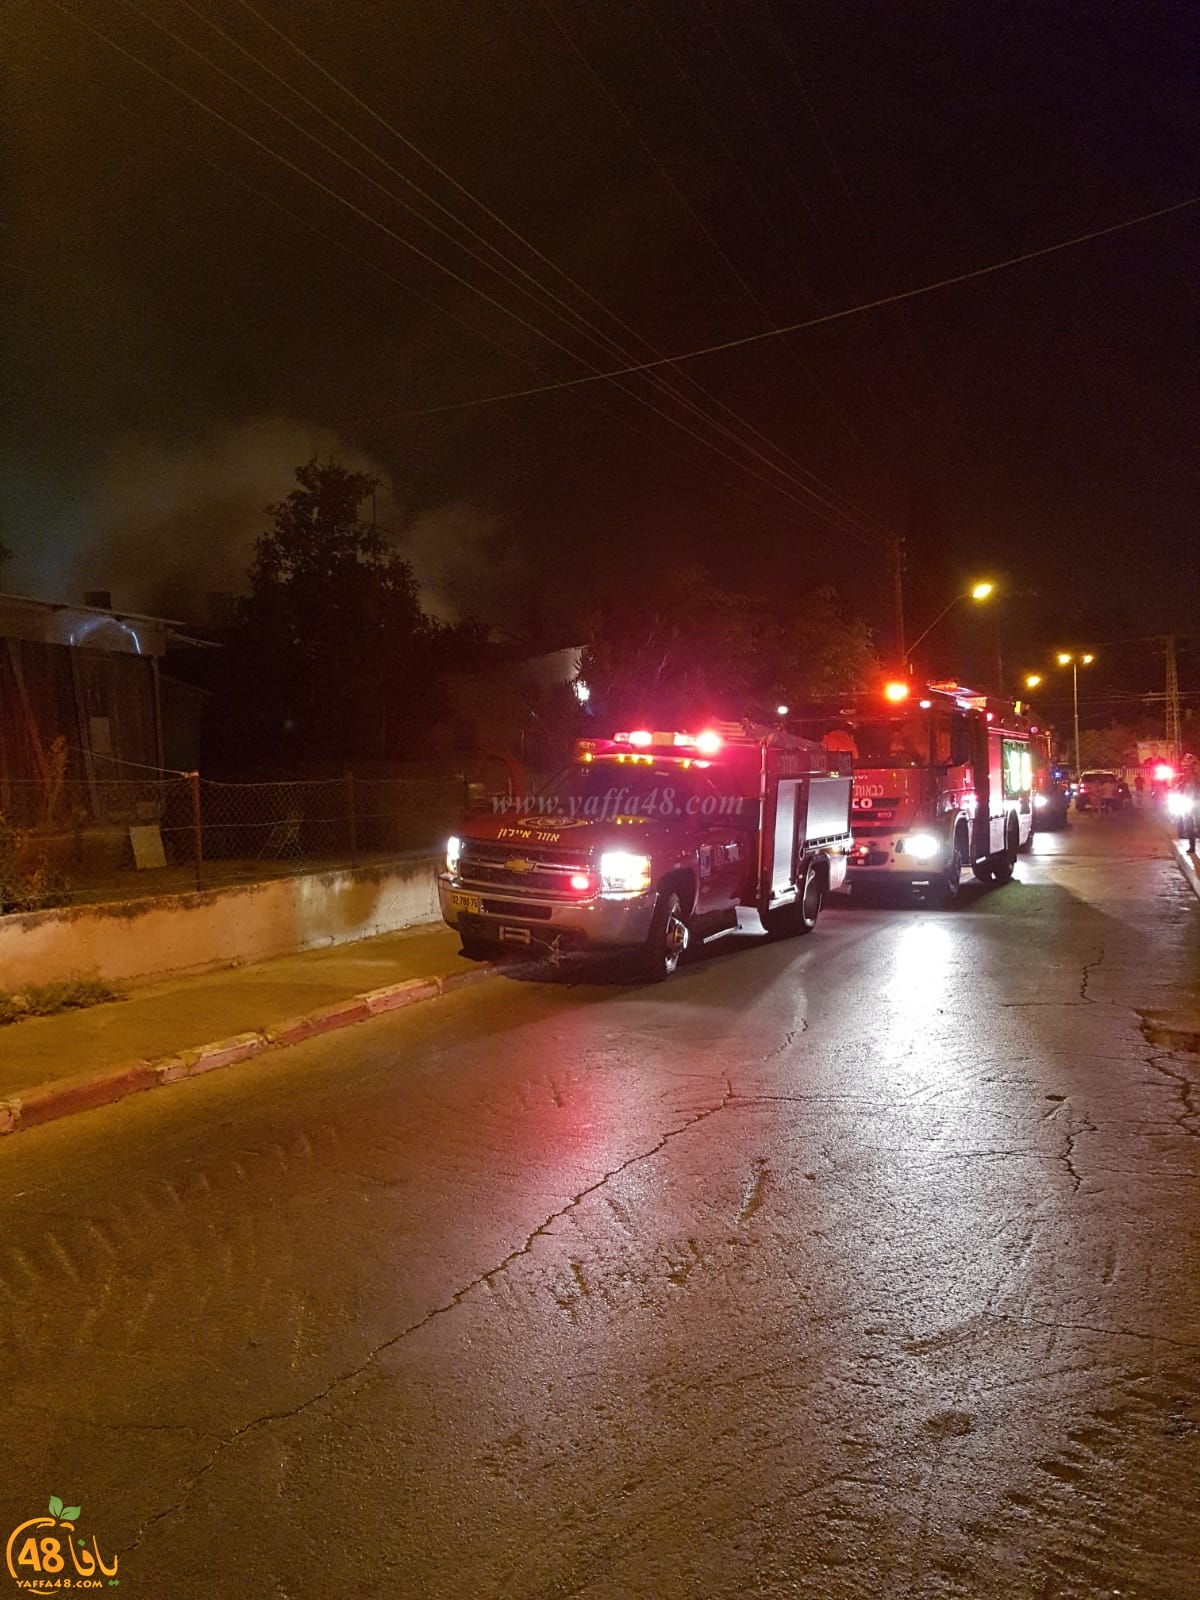  بالصور: احتراق منزل في مدينة الرملة دون وقوع اصابات 